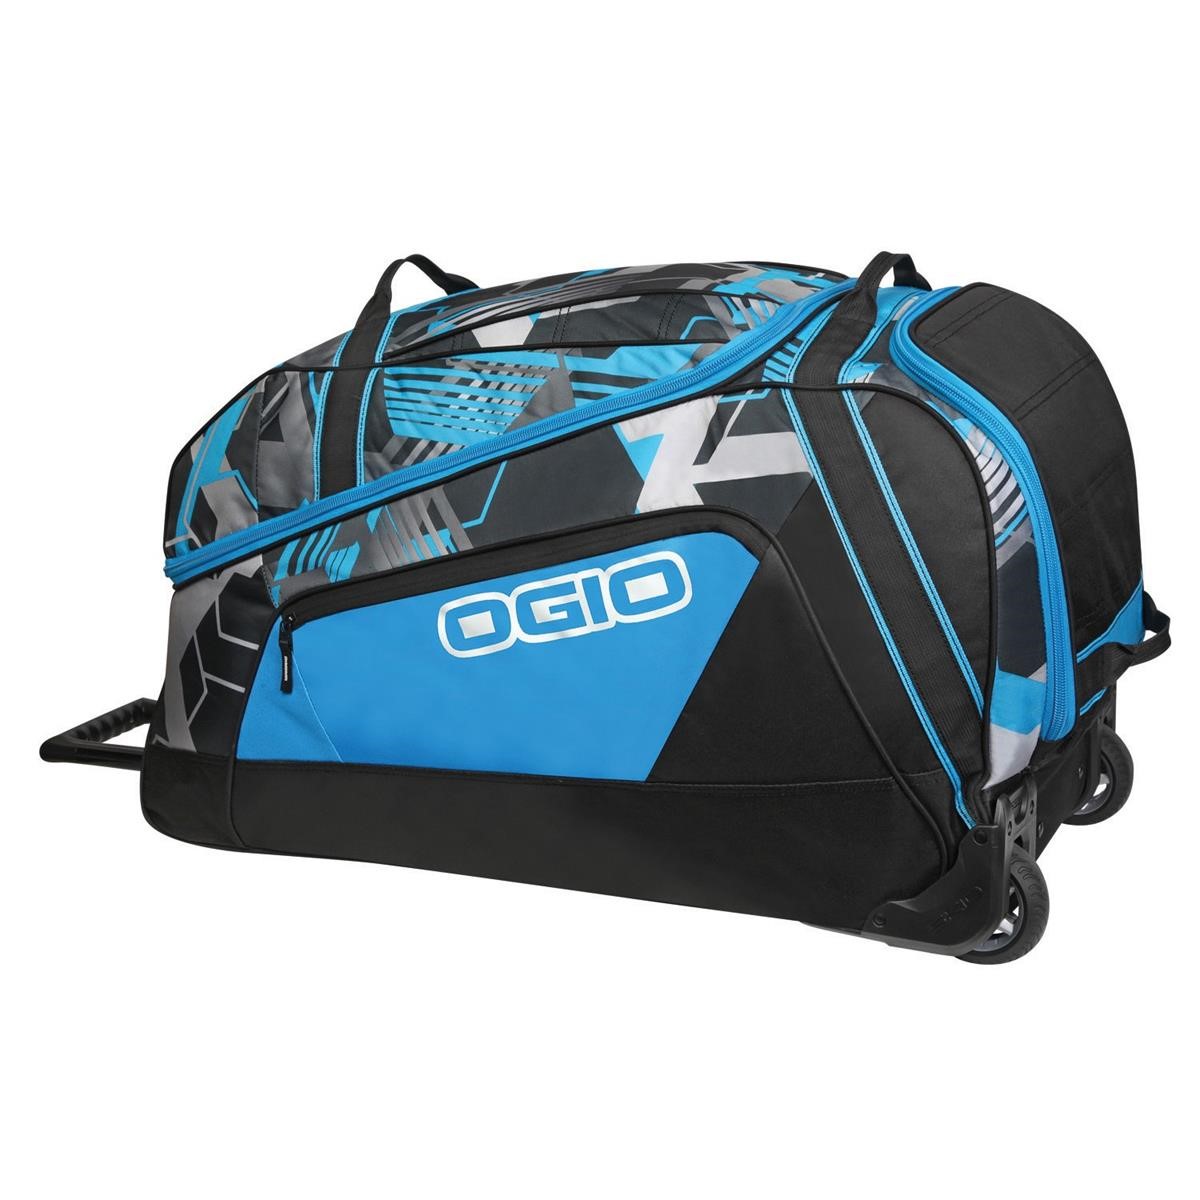 Ogio Travel Bag Big Mouth Wheel Bag Hex, 140 Liter